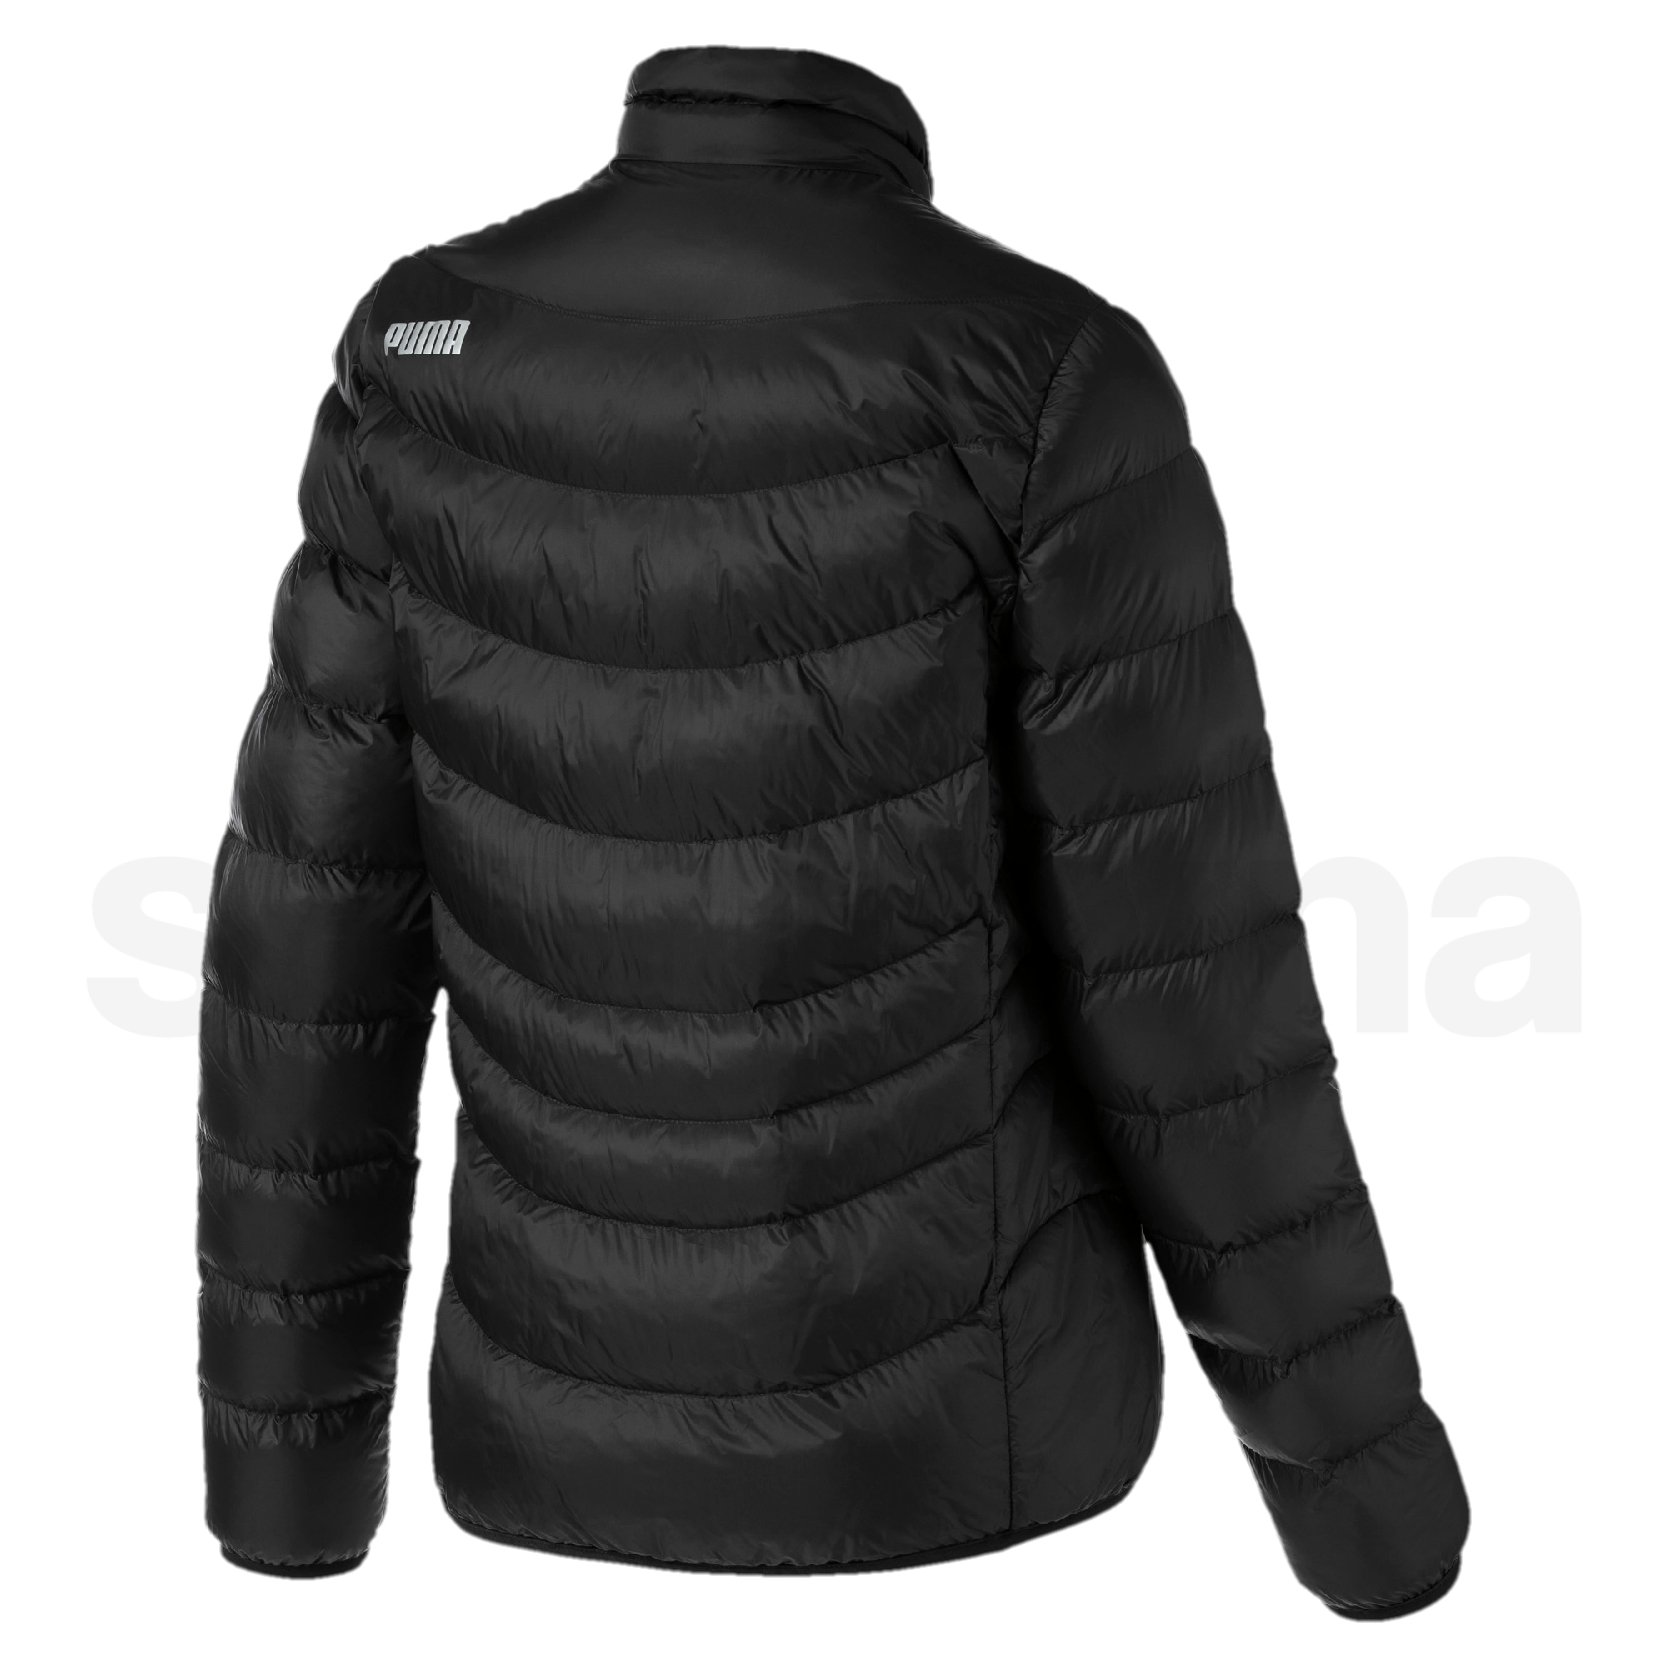 Bunda Puma Ultralight WarmCell Jacket - černá